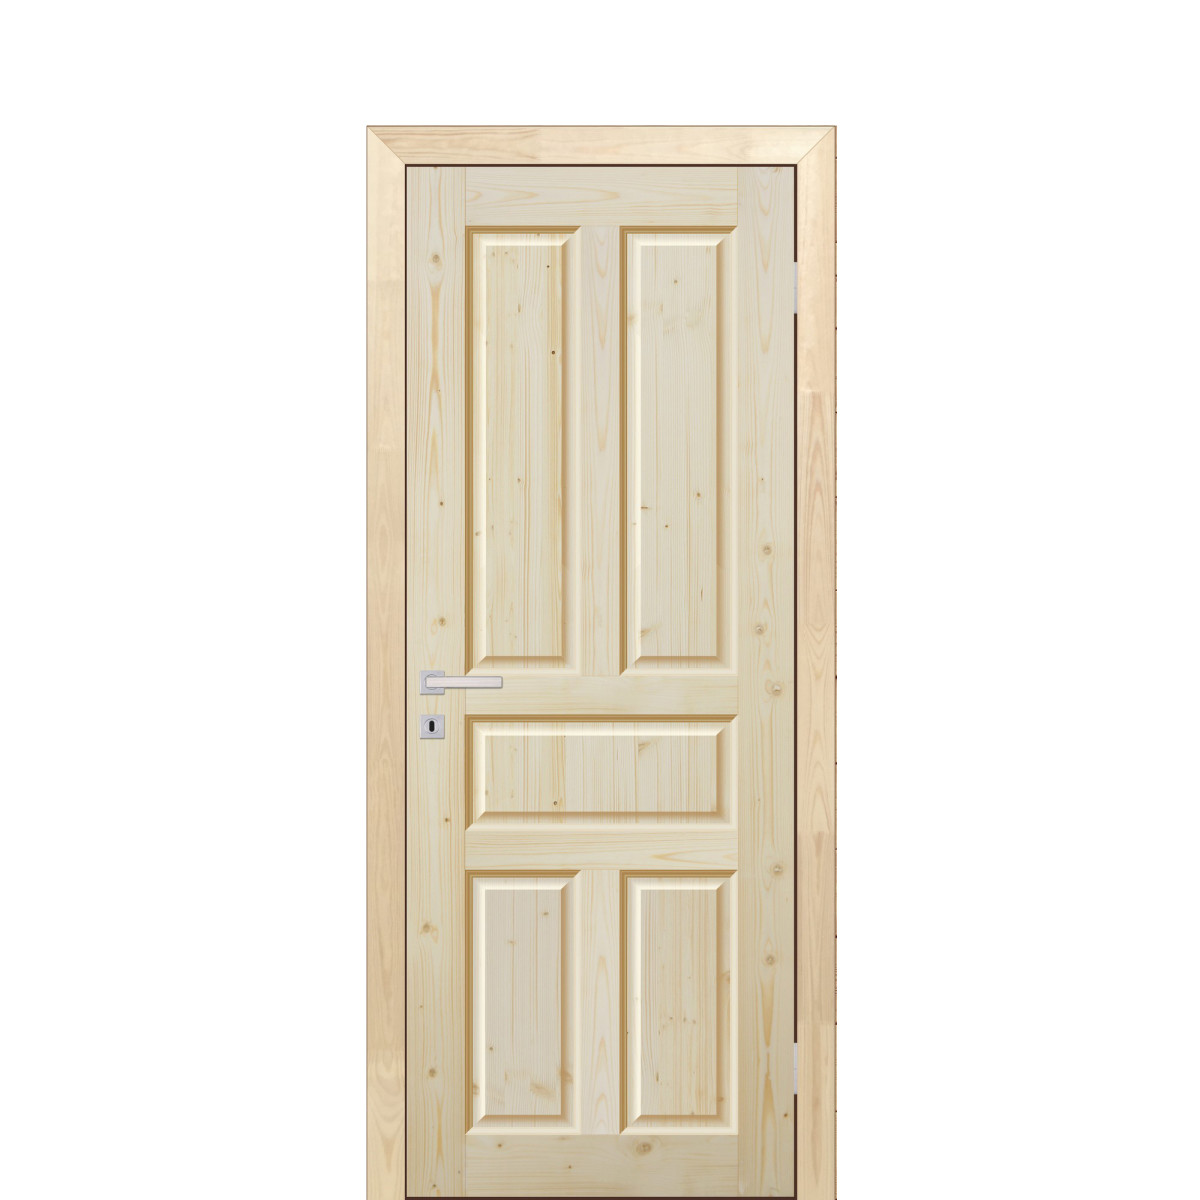 Дверь межкомнатная глухая Кантри 60x200 см, массив хвои, цвет натуральный